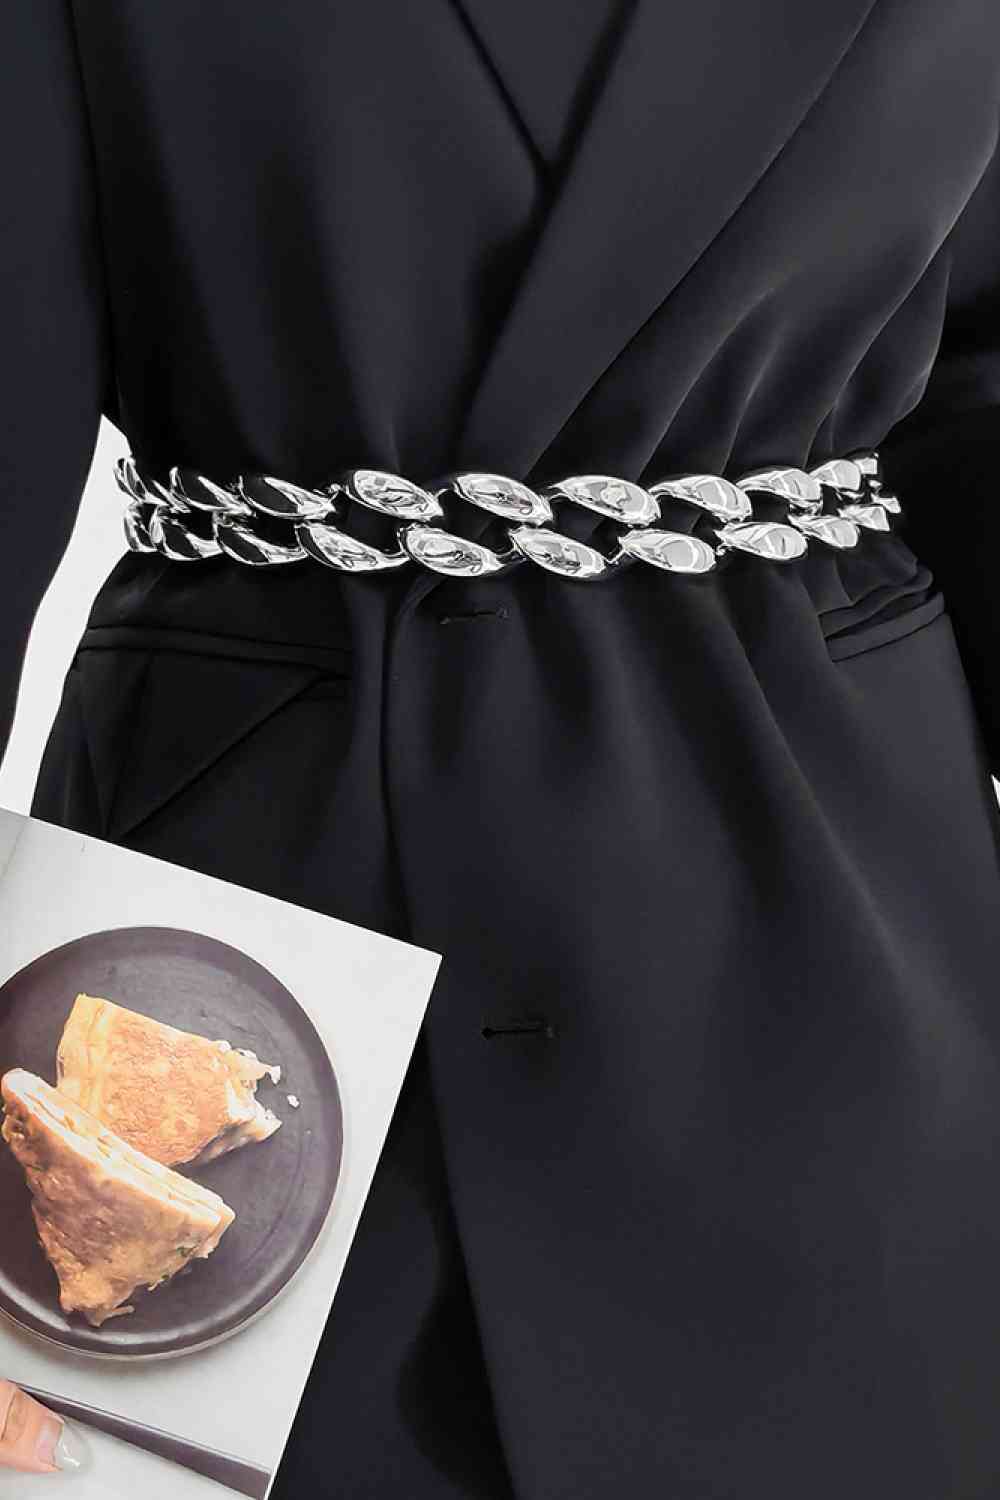 TEEK - 2" Width Acrylic Curb Chain Belt BELT TEEK Trend Silver  